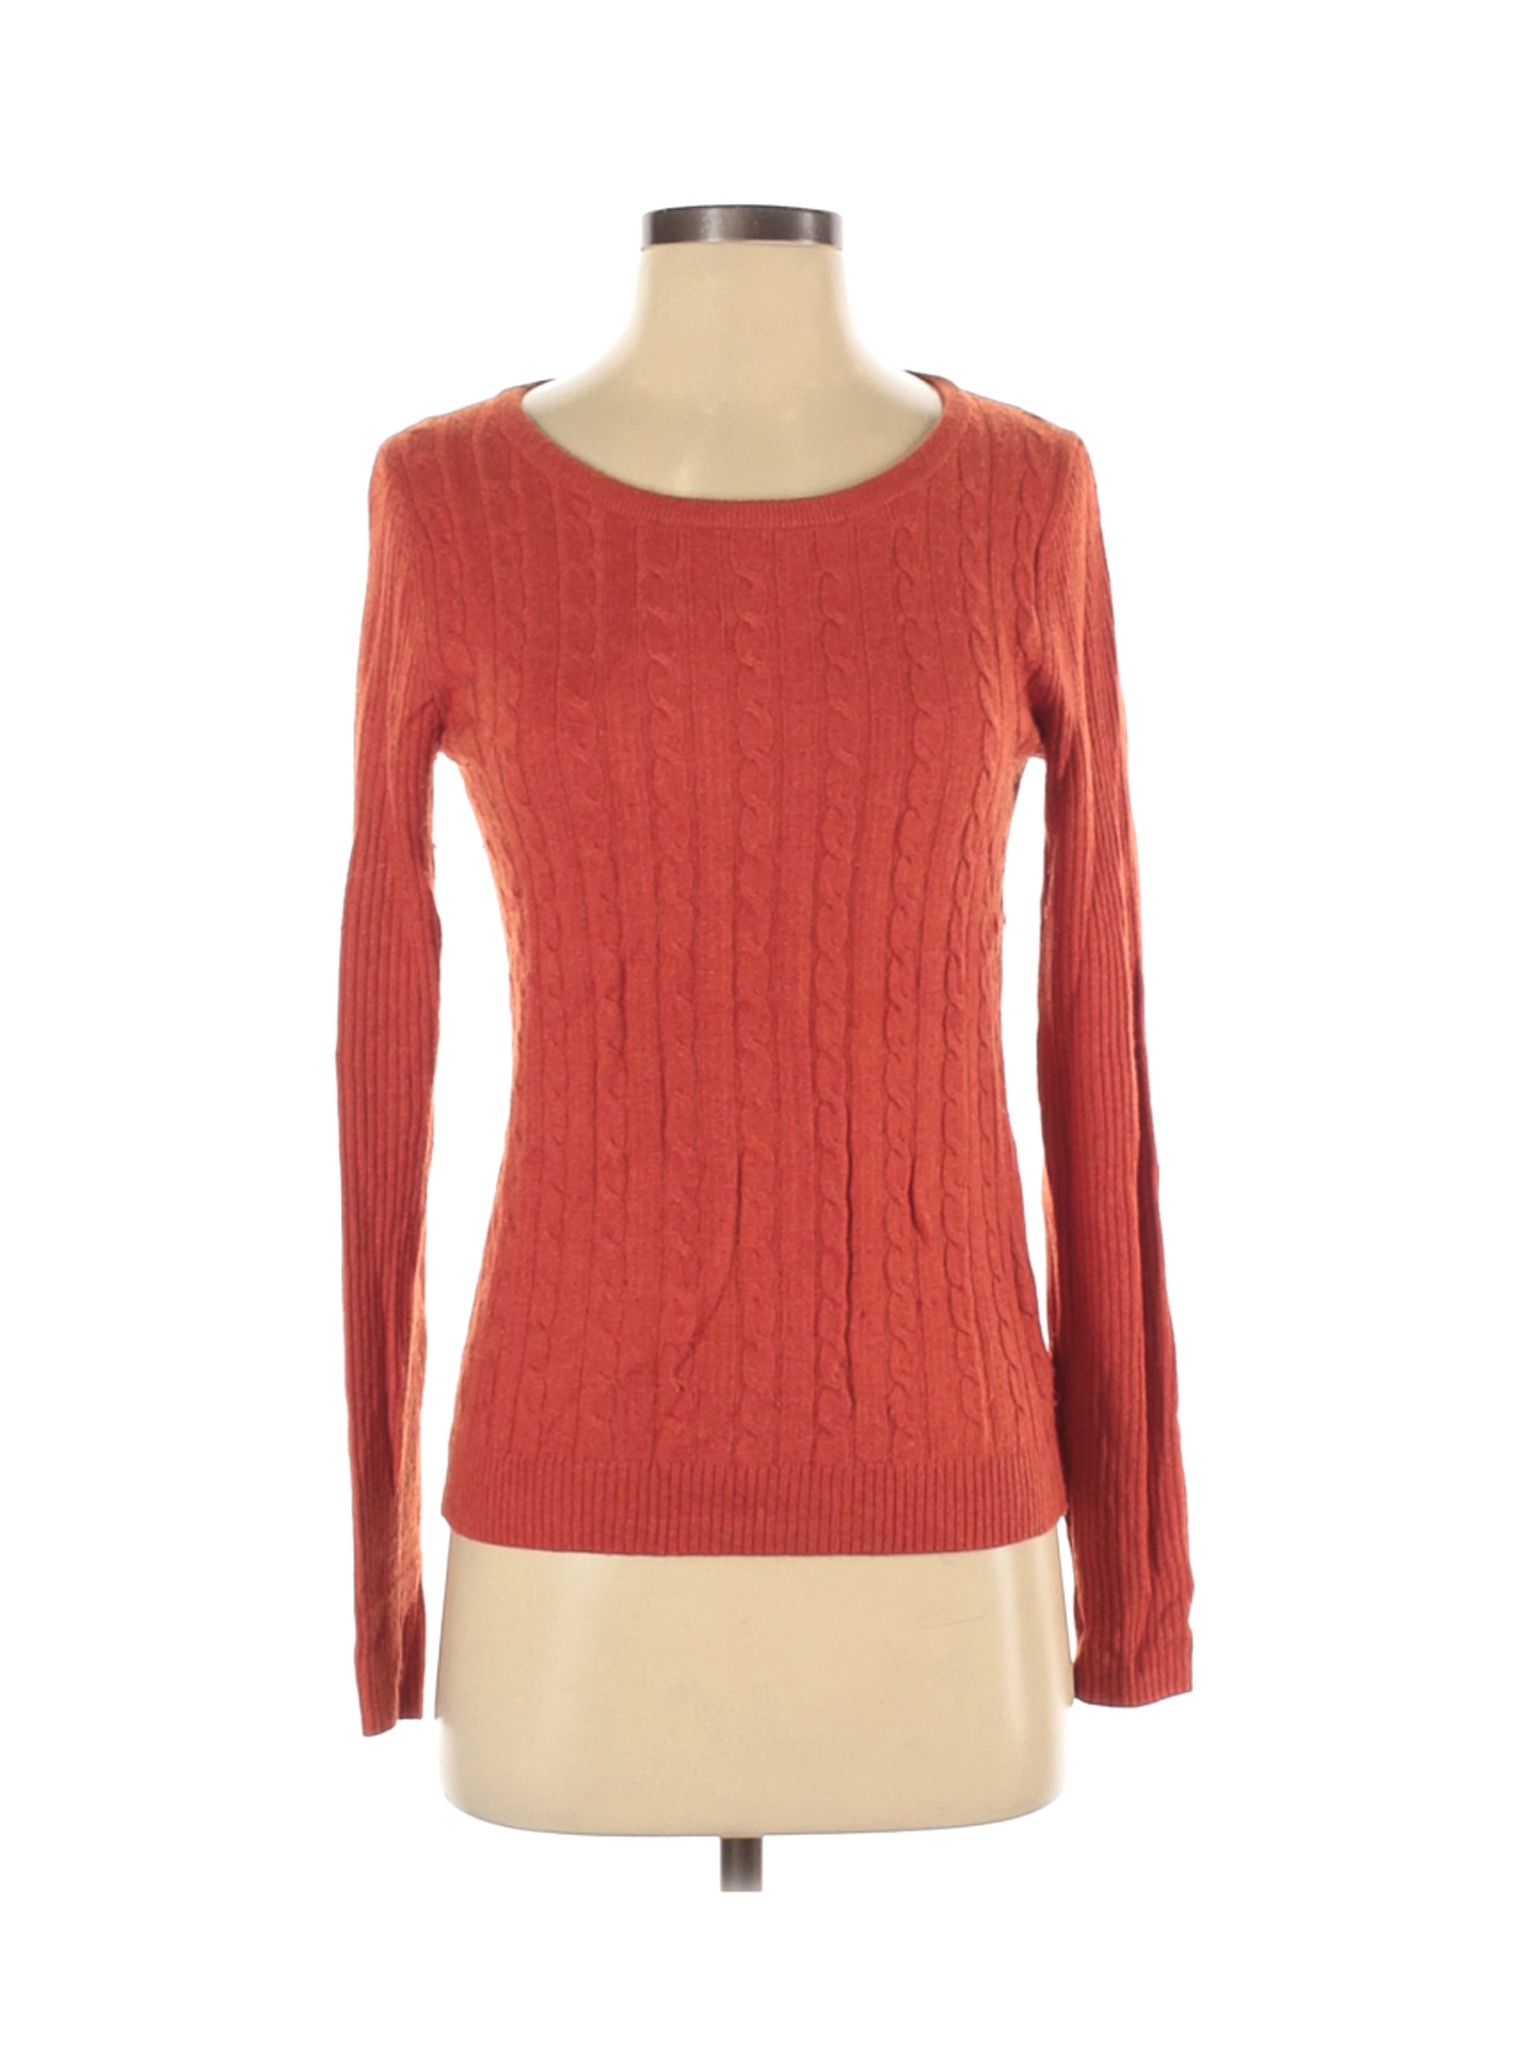 Uniqlo Women Orange Pullover Sweater S | eBay